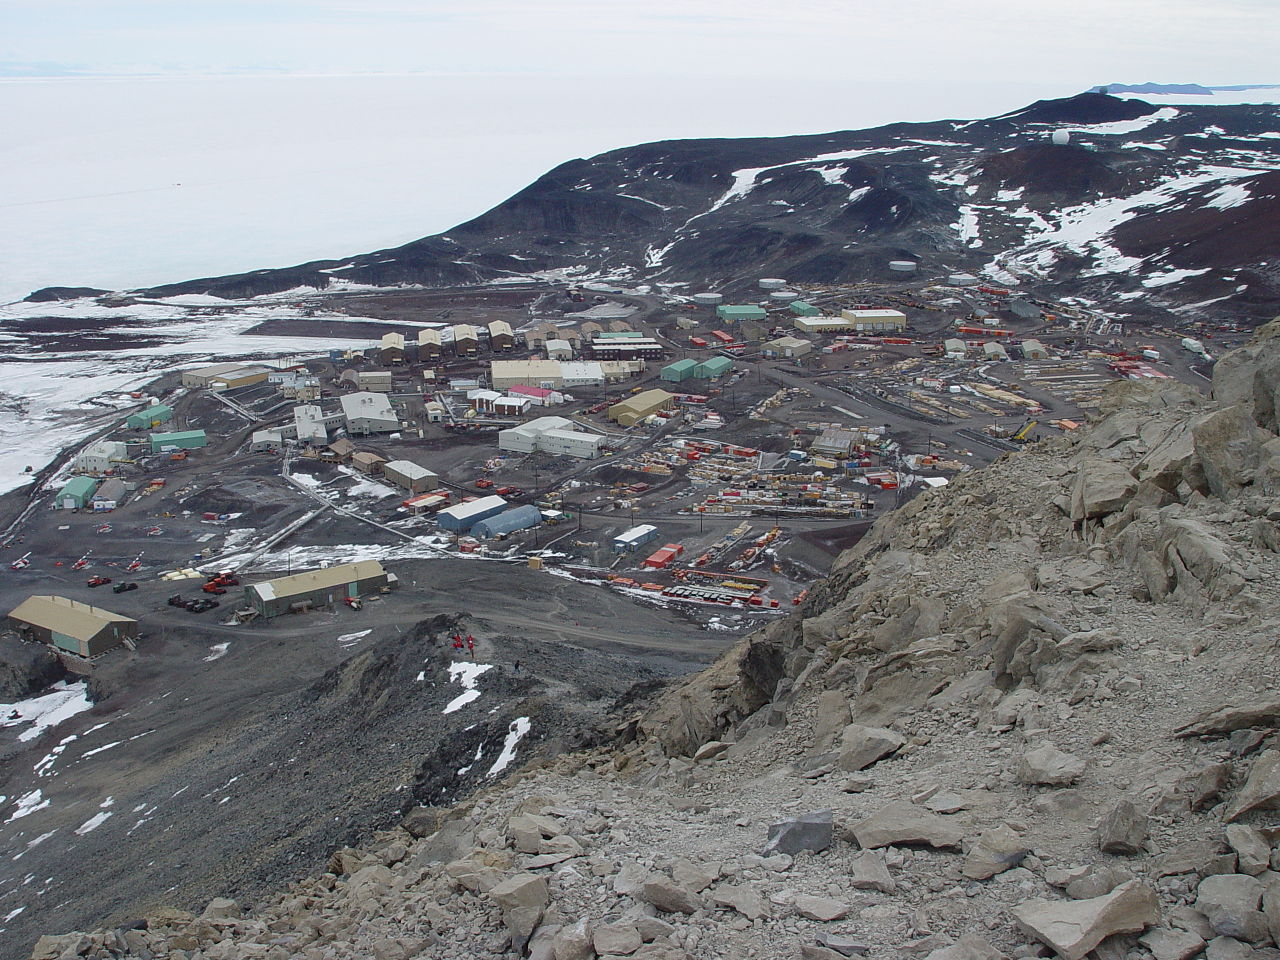 Stazione McMurdo, la più grande delle basi scientifiche dell'Antartide